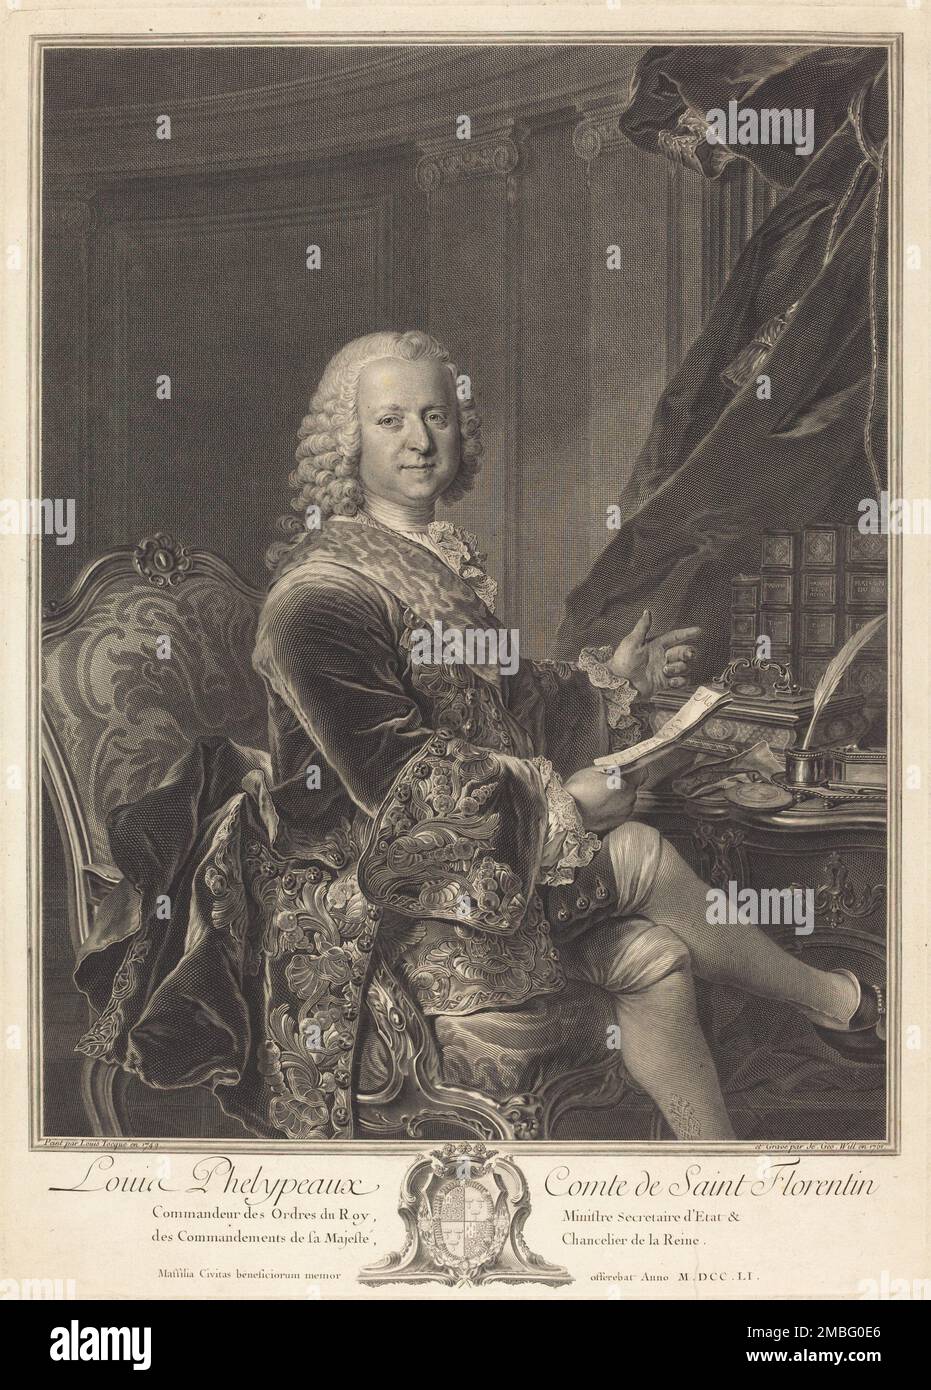 Louis Phelypeaux, comte de Saint Florentin, 1761. Stock Photo